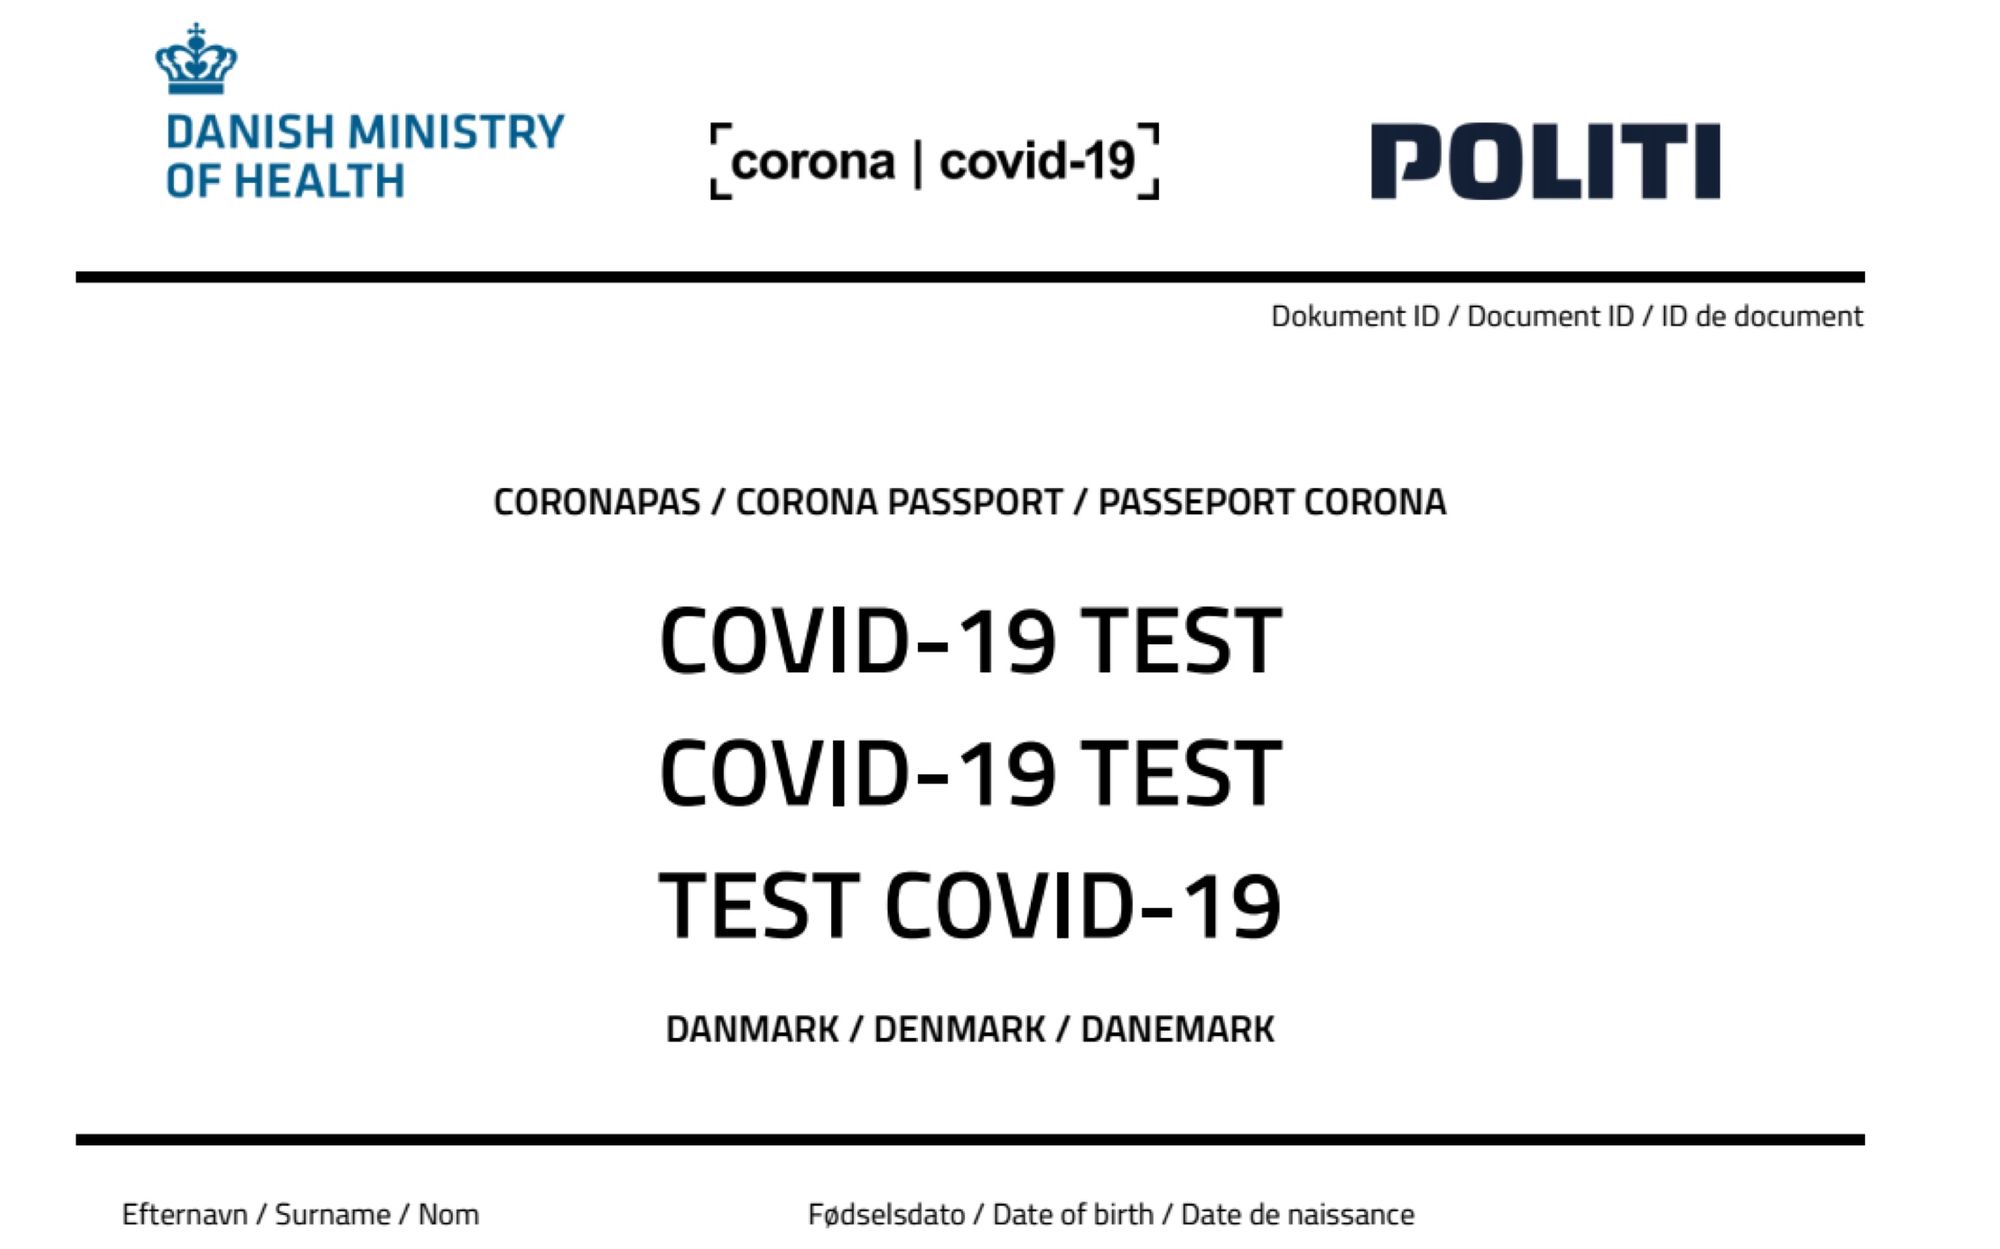 Coronapas downloadet: Nu ligger mit CPR-nummer og mine sundhedsdata på en amerikansk server